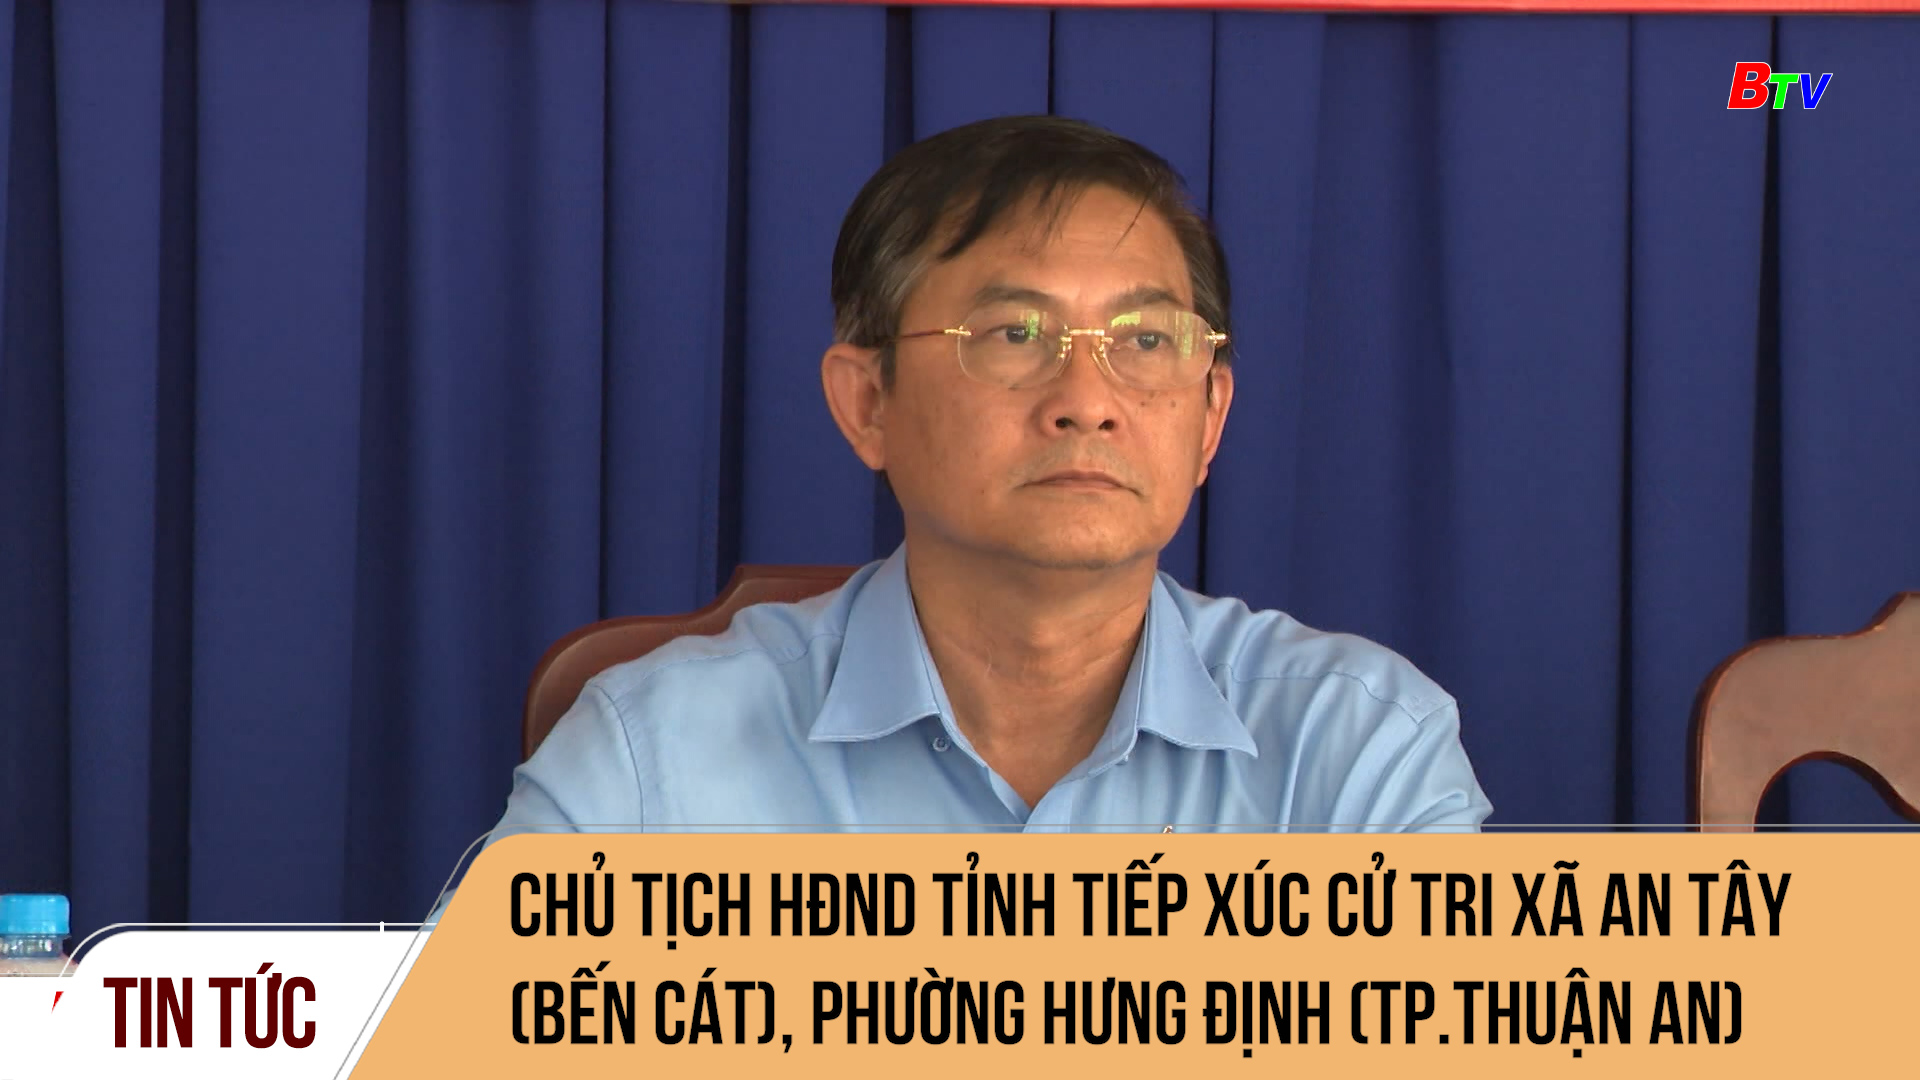 Chủ tịch HĐND Tỉnh tiếp xúc cử tri xã An Tây (Bến Cát), phường Hưng Định (TP.Thuận An)